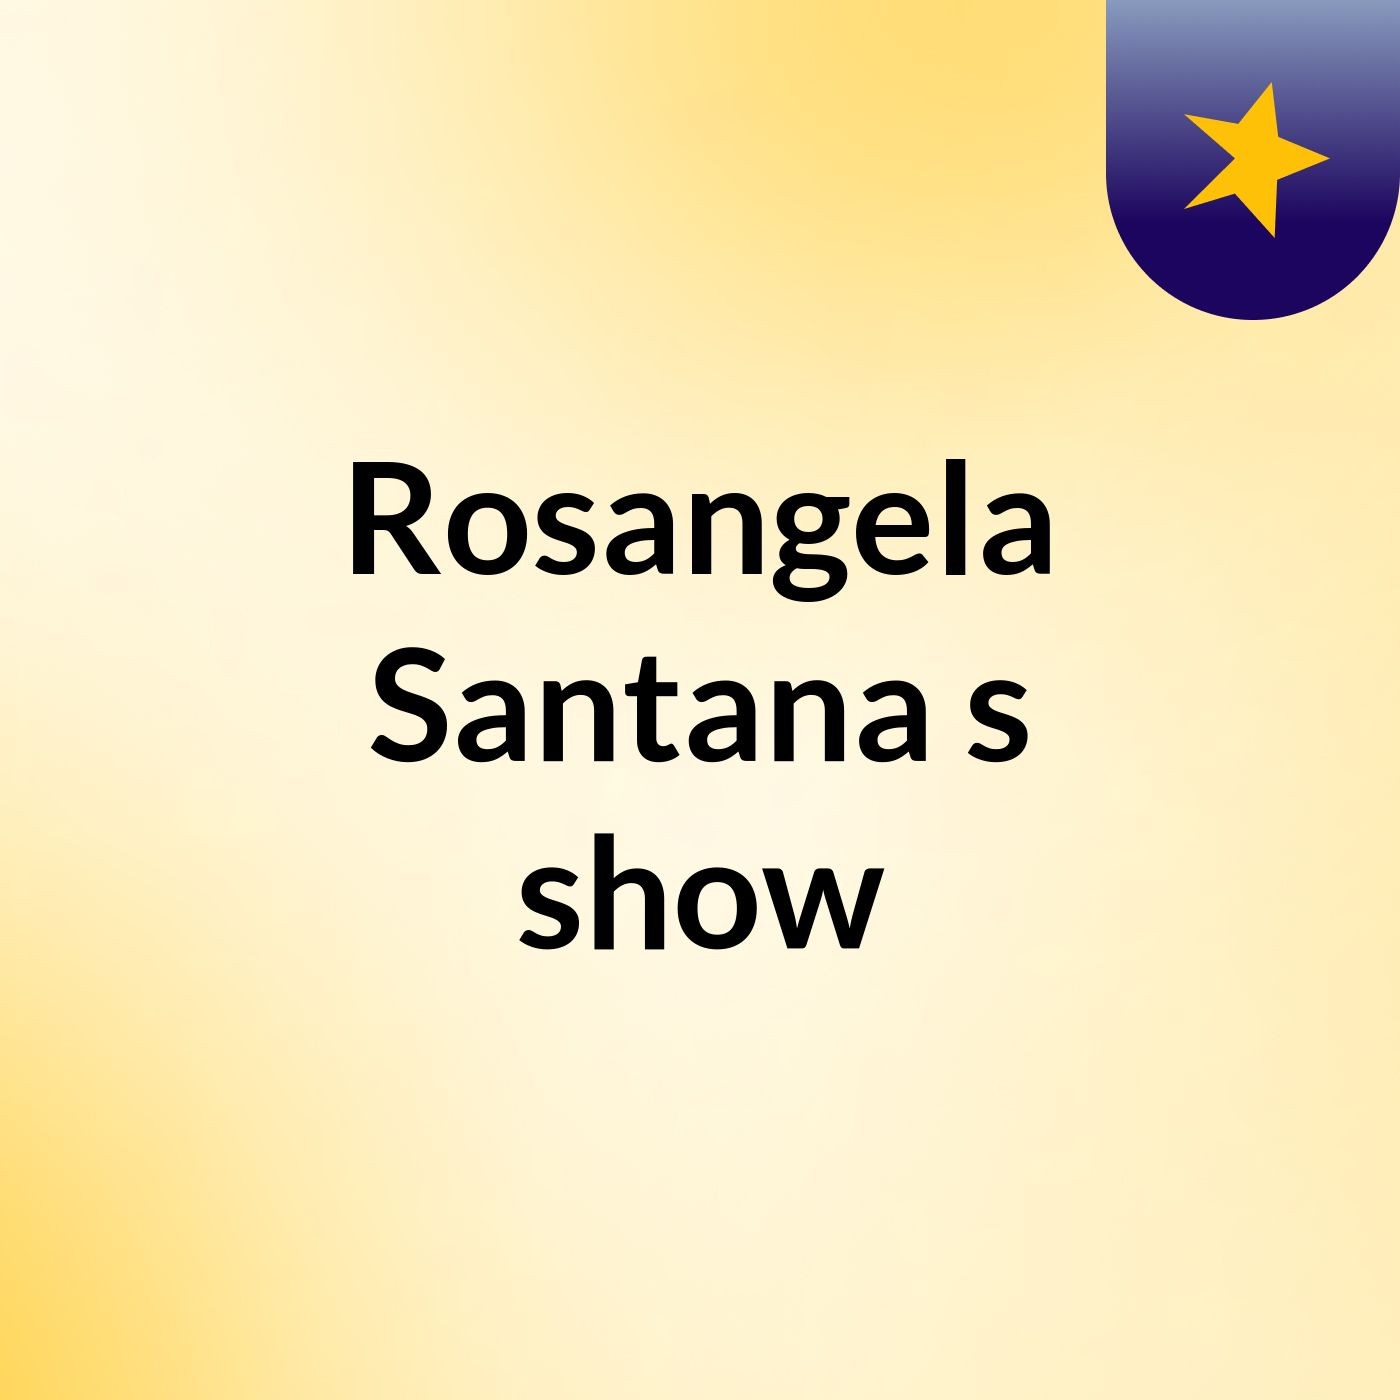 Rosangela Santana's show